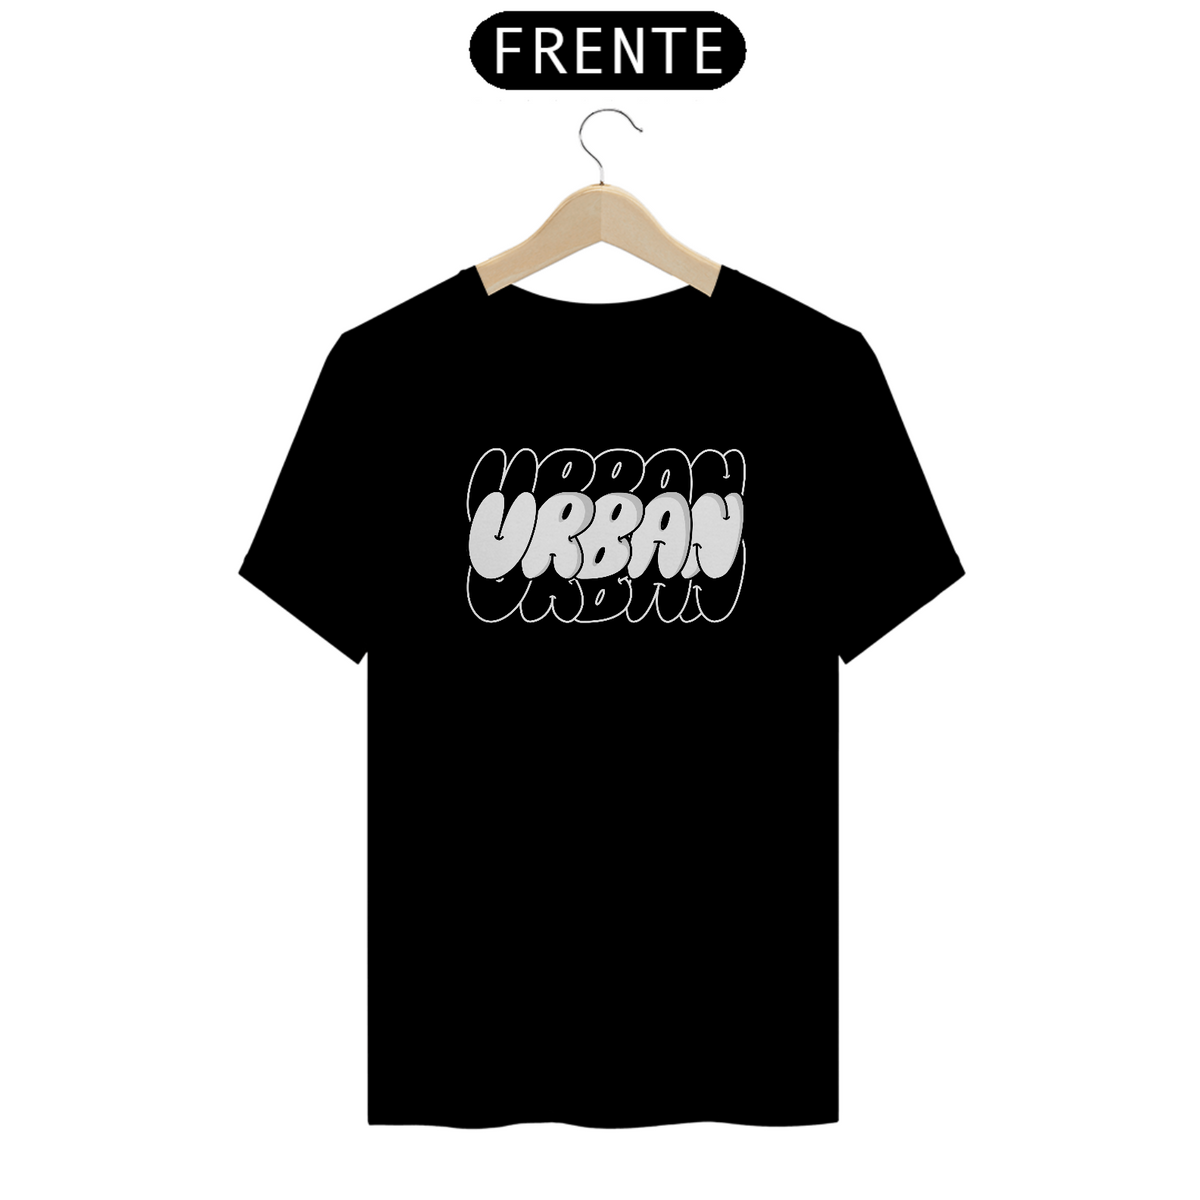 Nome do produto: Camiseta Urban Urban